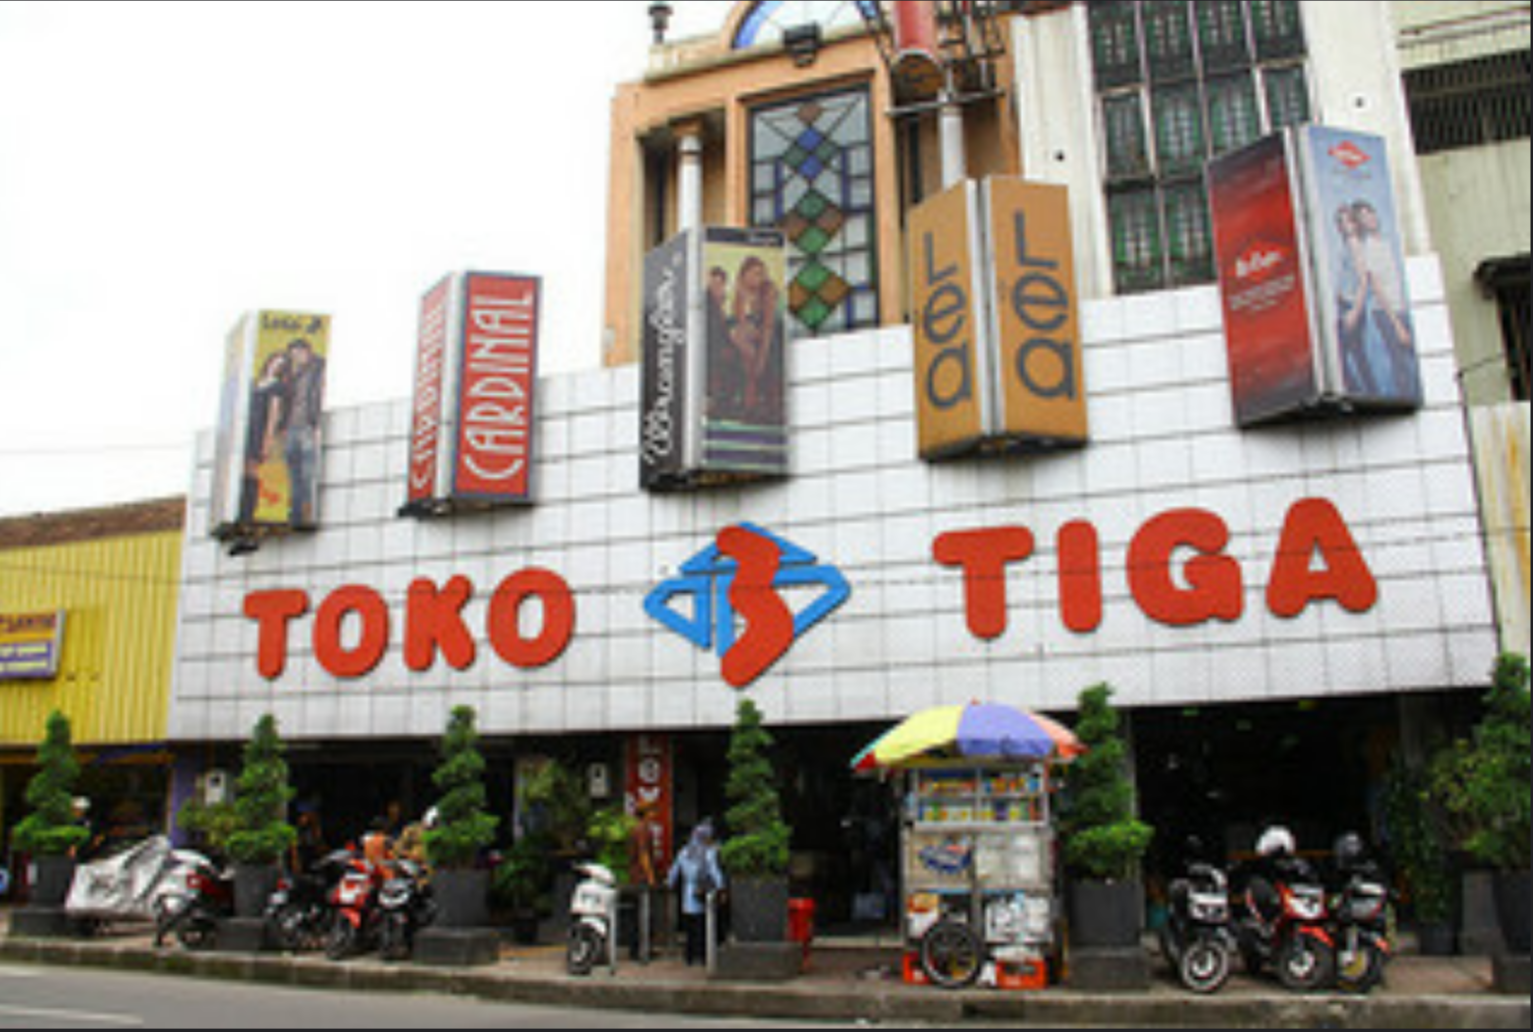  Toko  Tiga Original Jeans  Bandung  Trip Center Bandung  